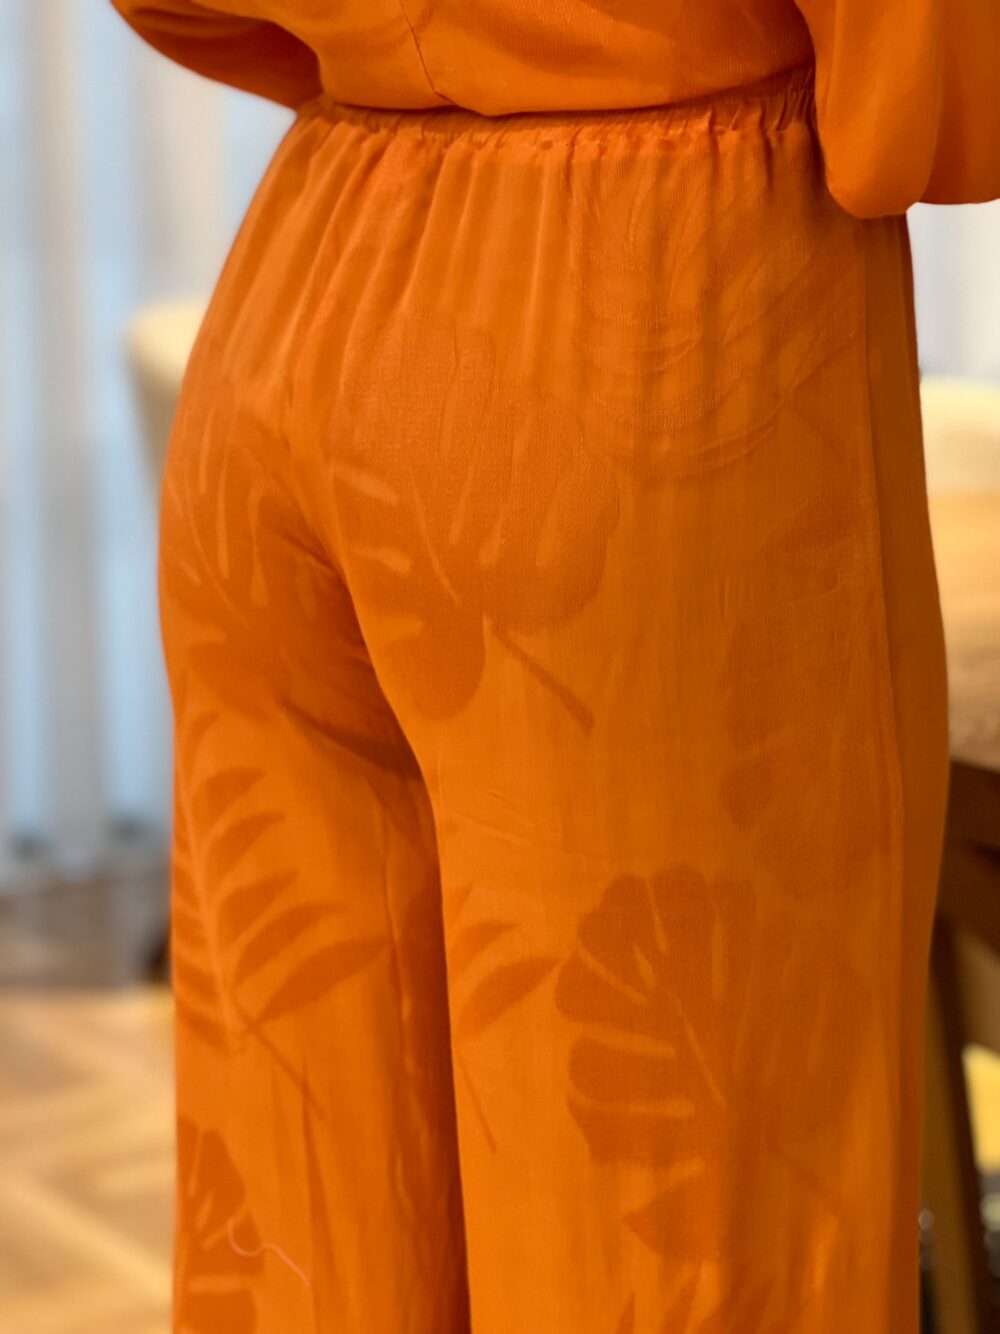 πορτοκαλι παντελονα με αναγλυφα σχεδια